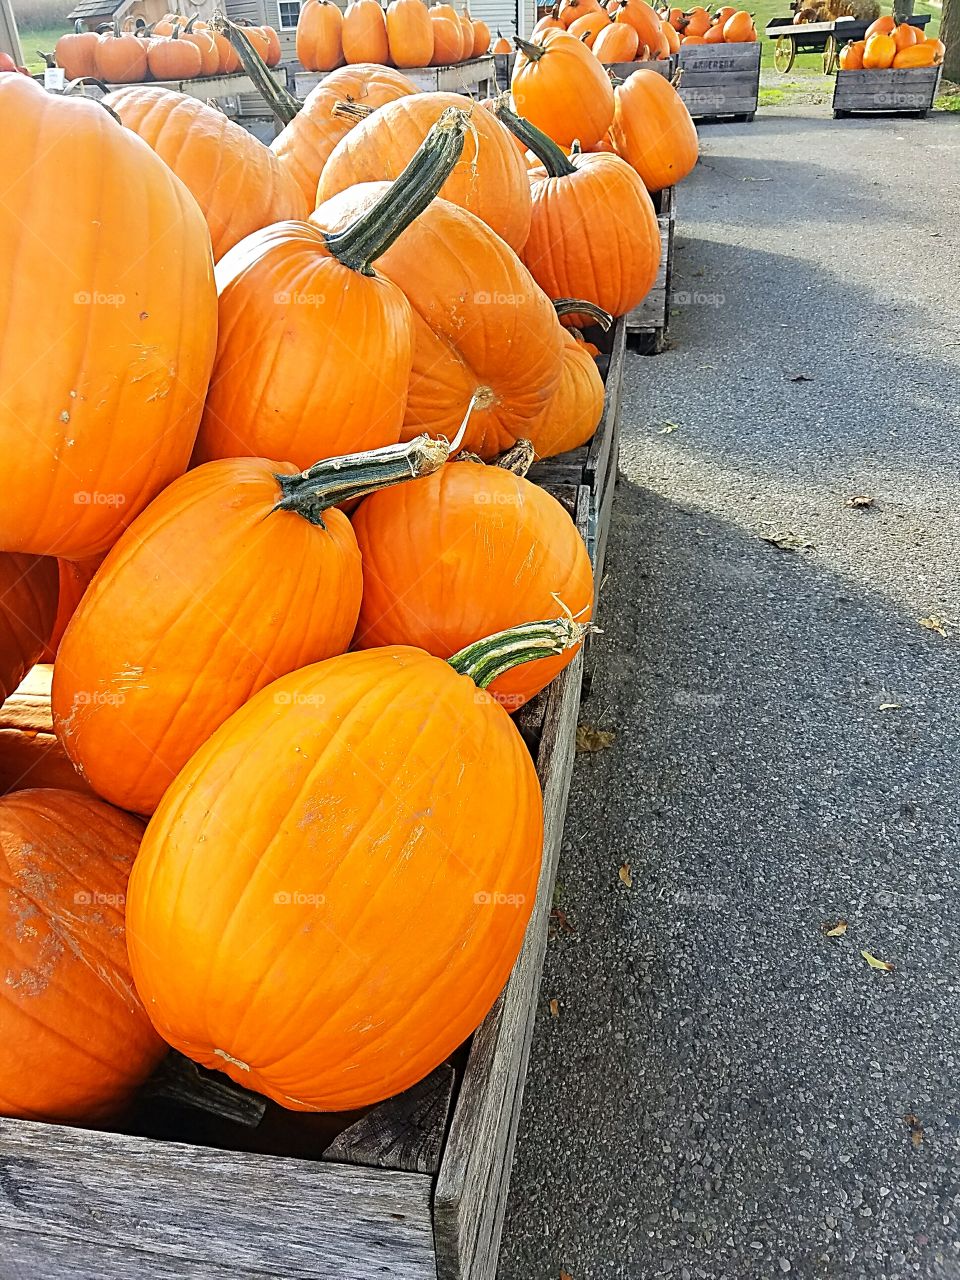 Pumpkin Shopping